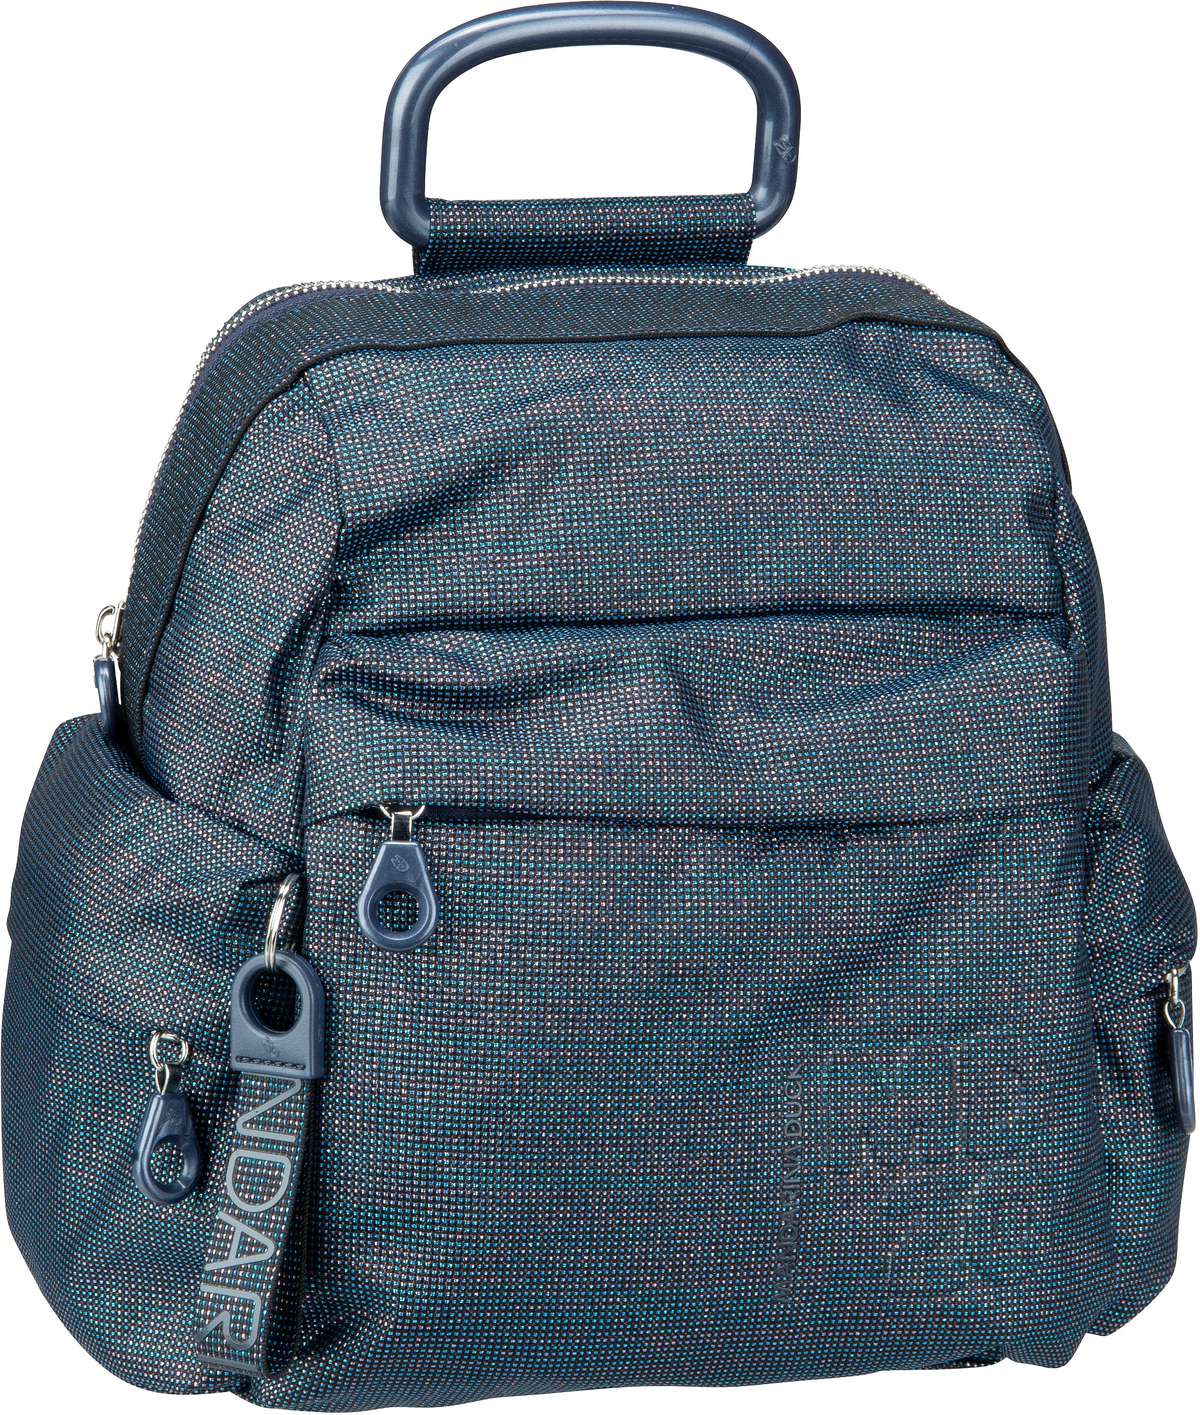 Mandarina Duck MD20 Lux Small Backpack QNTT1 - Black Pearl